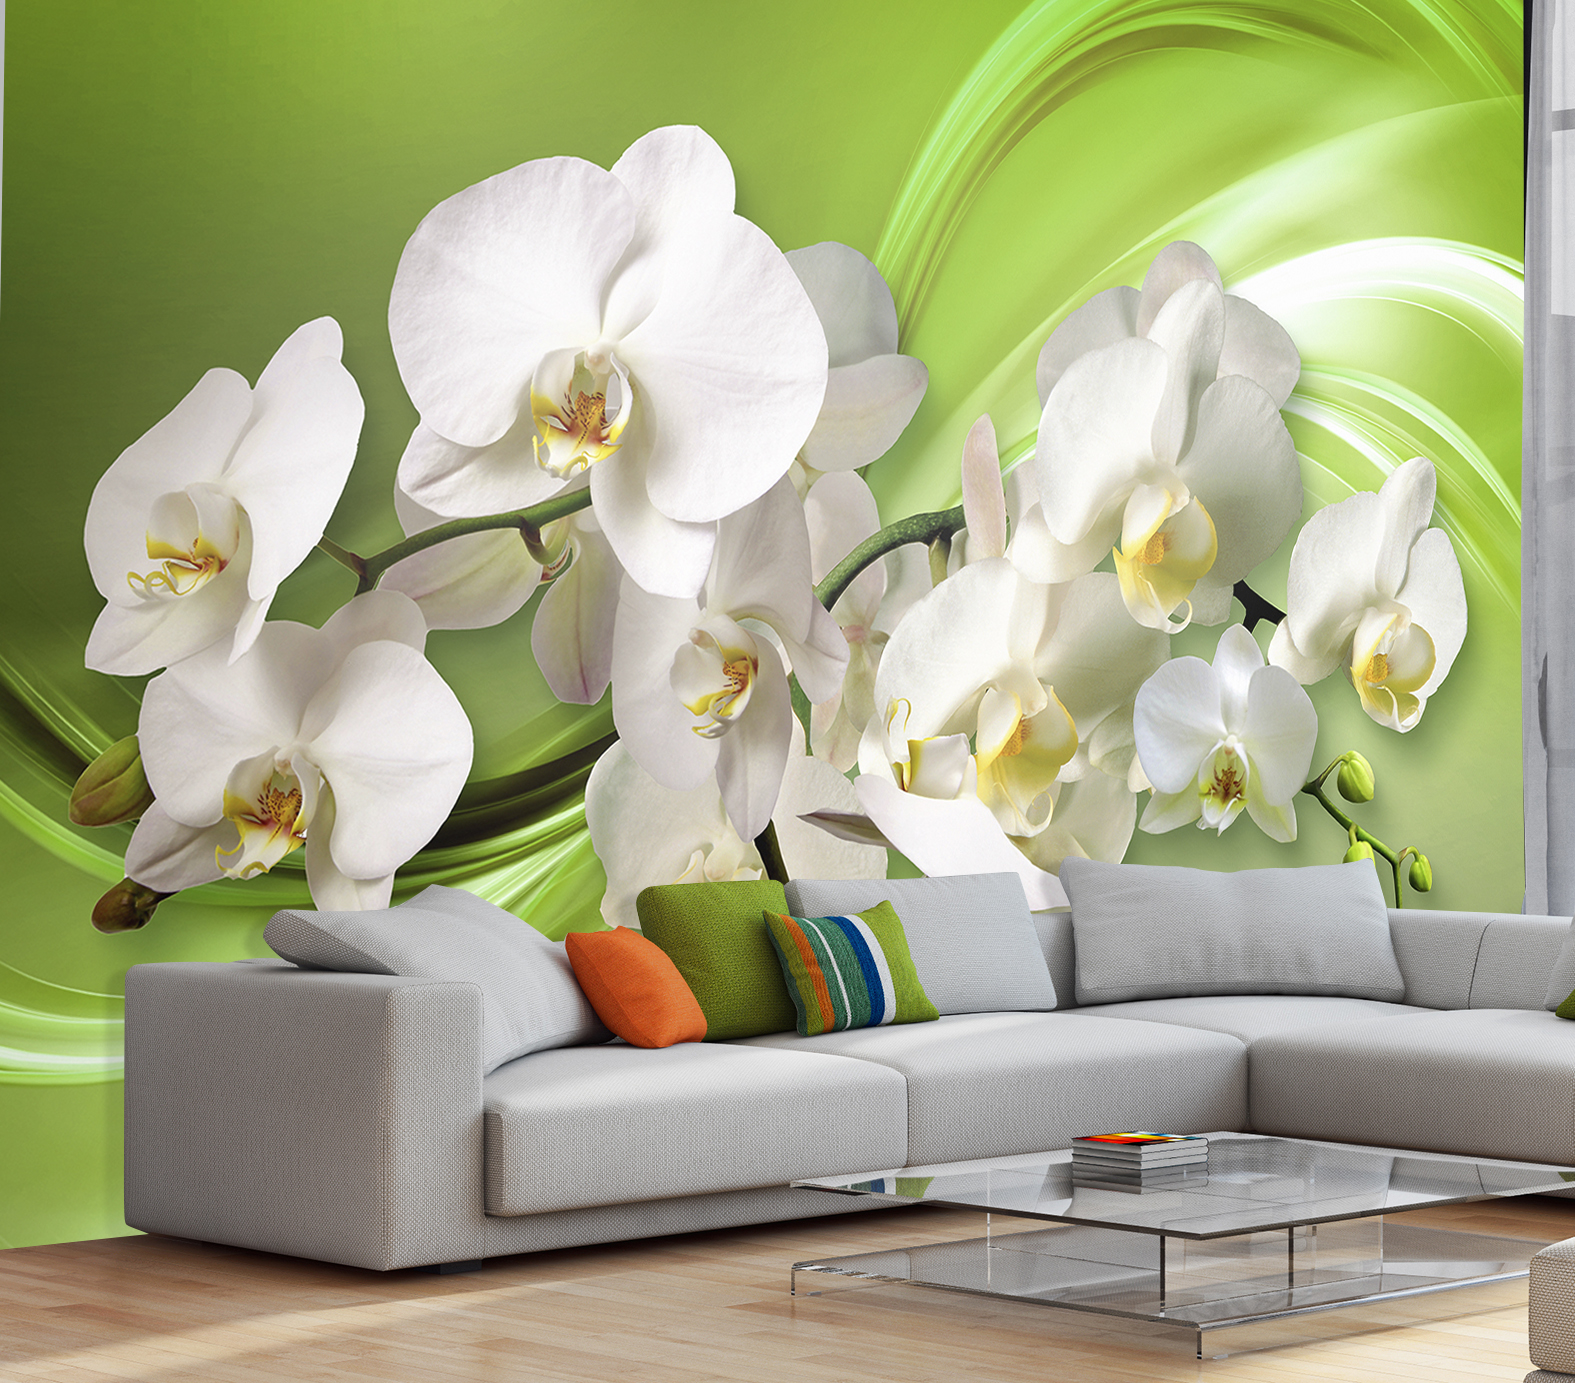 Фотообои Photostena 3D орхидеи на зеленом фоне 4,08 x 2,7 м